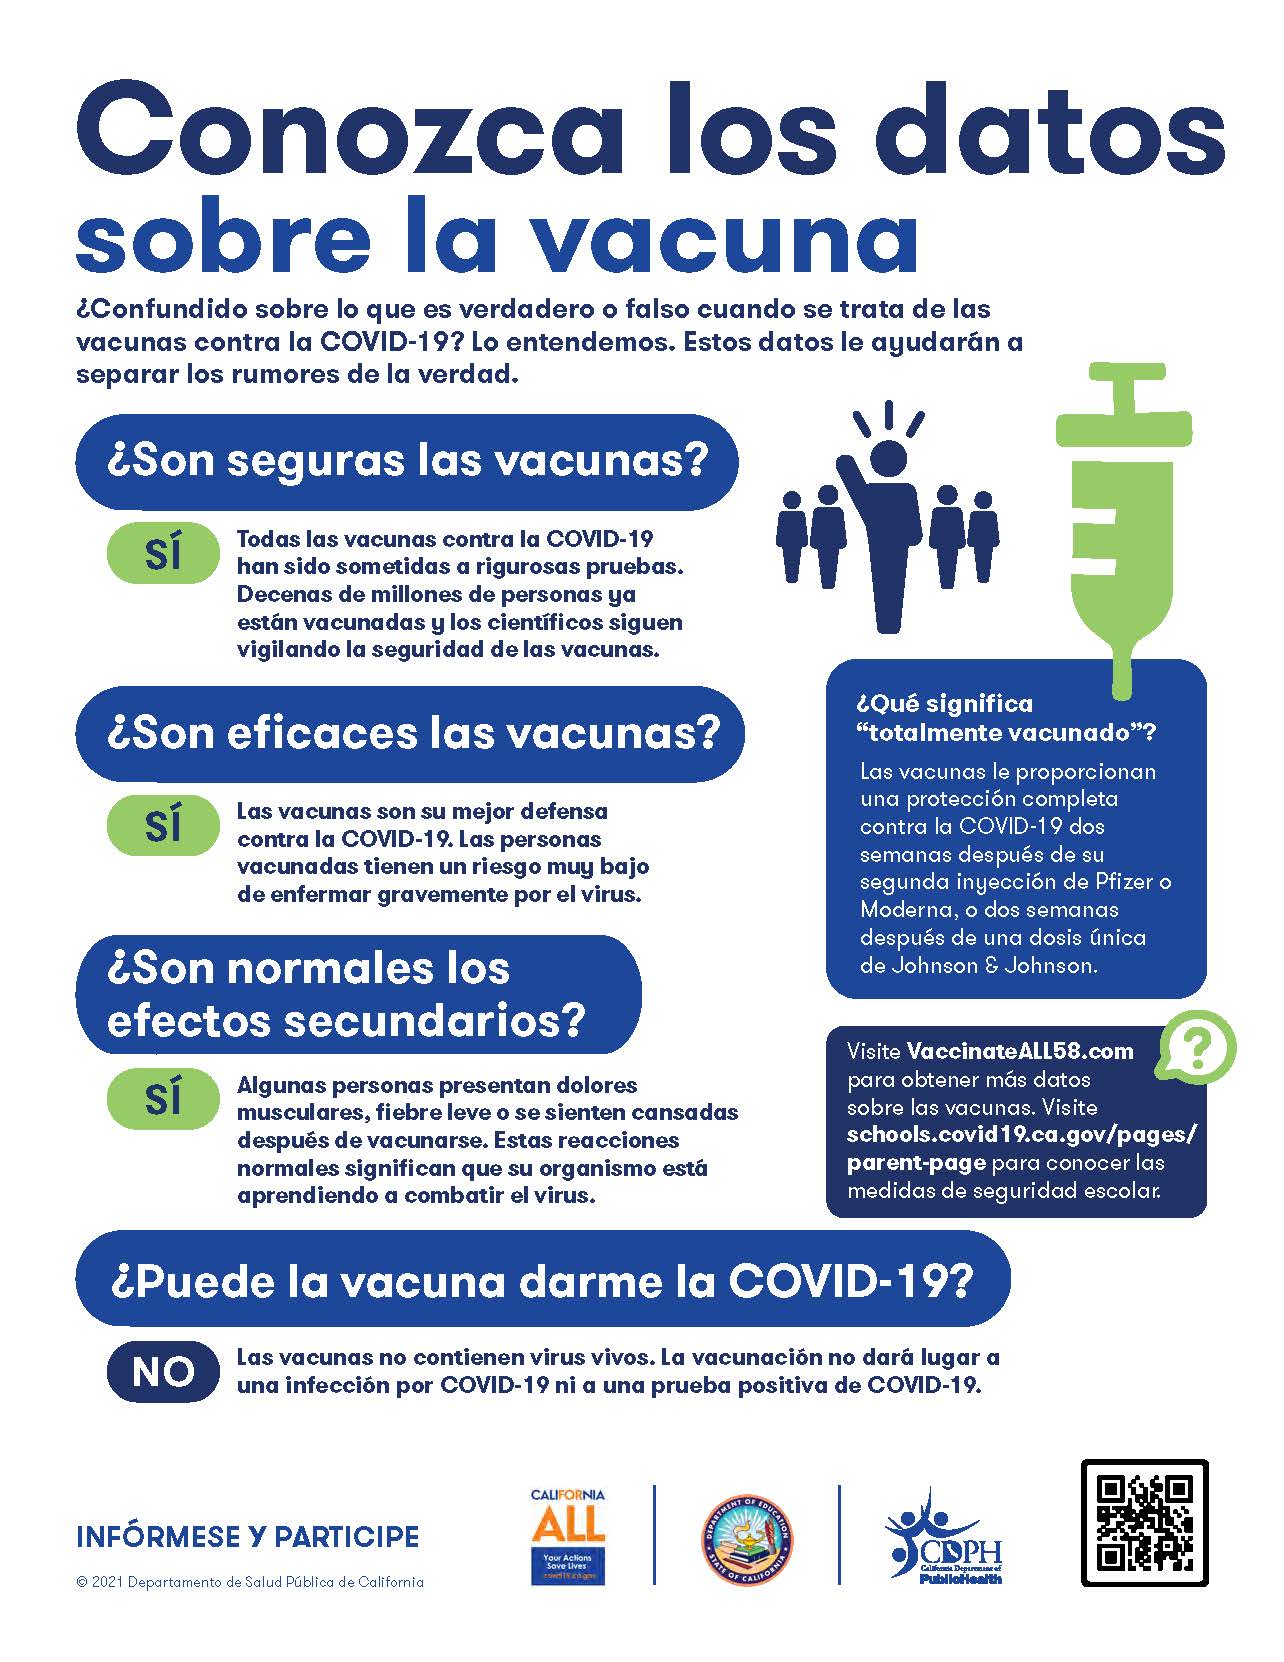 Conozca los datos sobre la vacuna